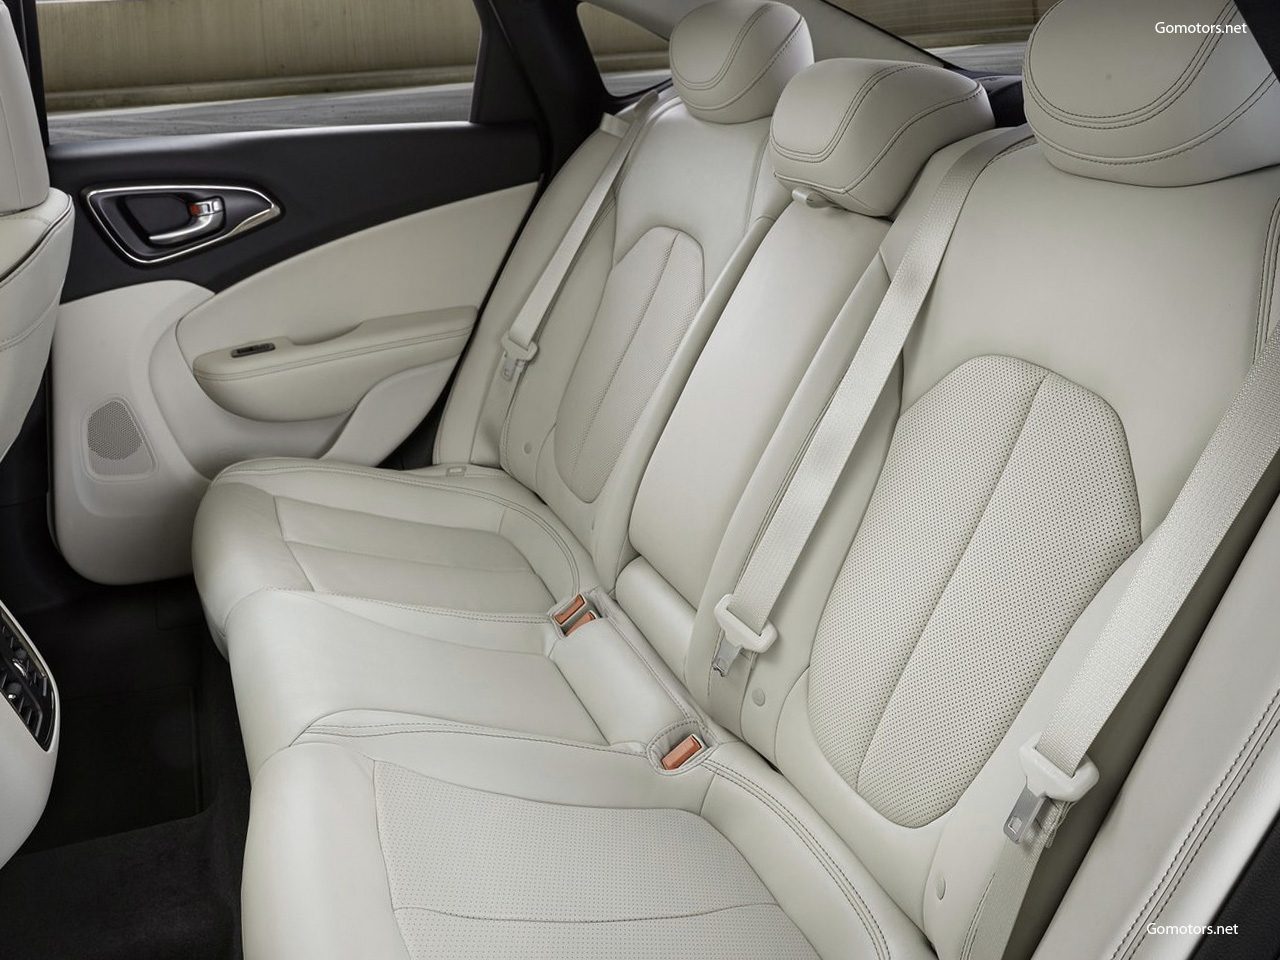 2015 Chrysler 200 interior